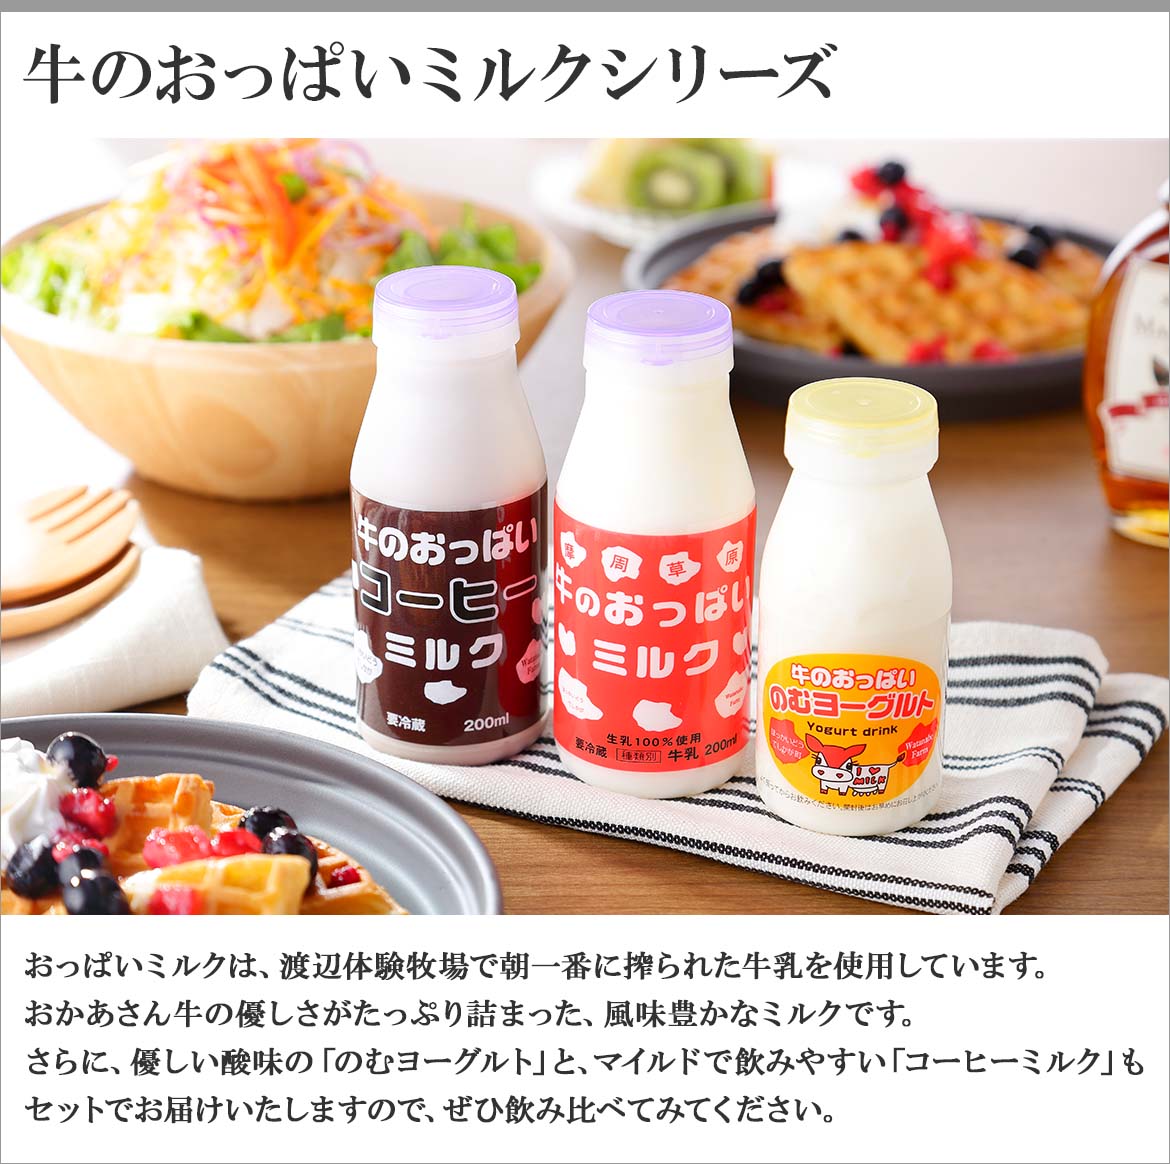 3000円 35％OFF ふるさと納税 鶴居村アイスクリーム ミルクの贈り物 8個セット 北海道鶴居村